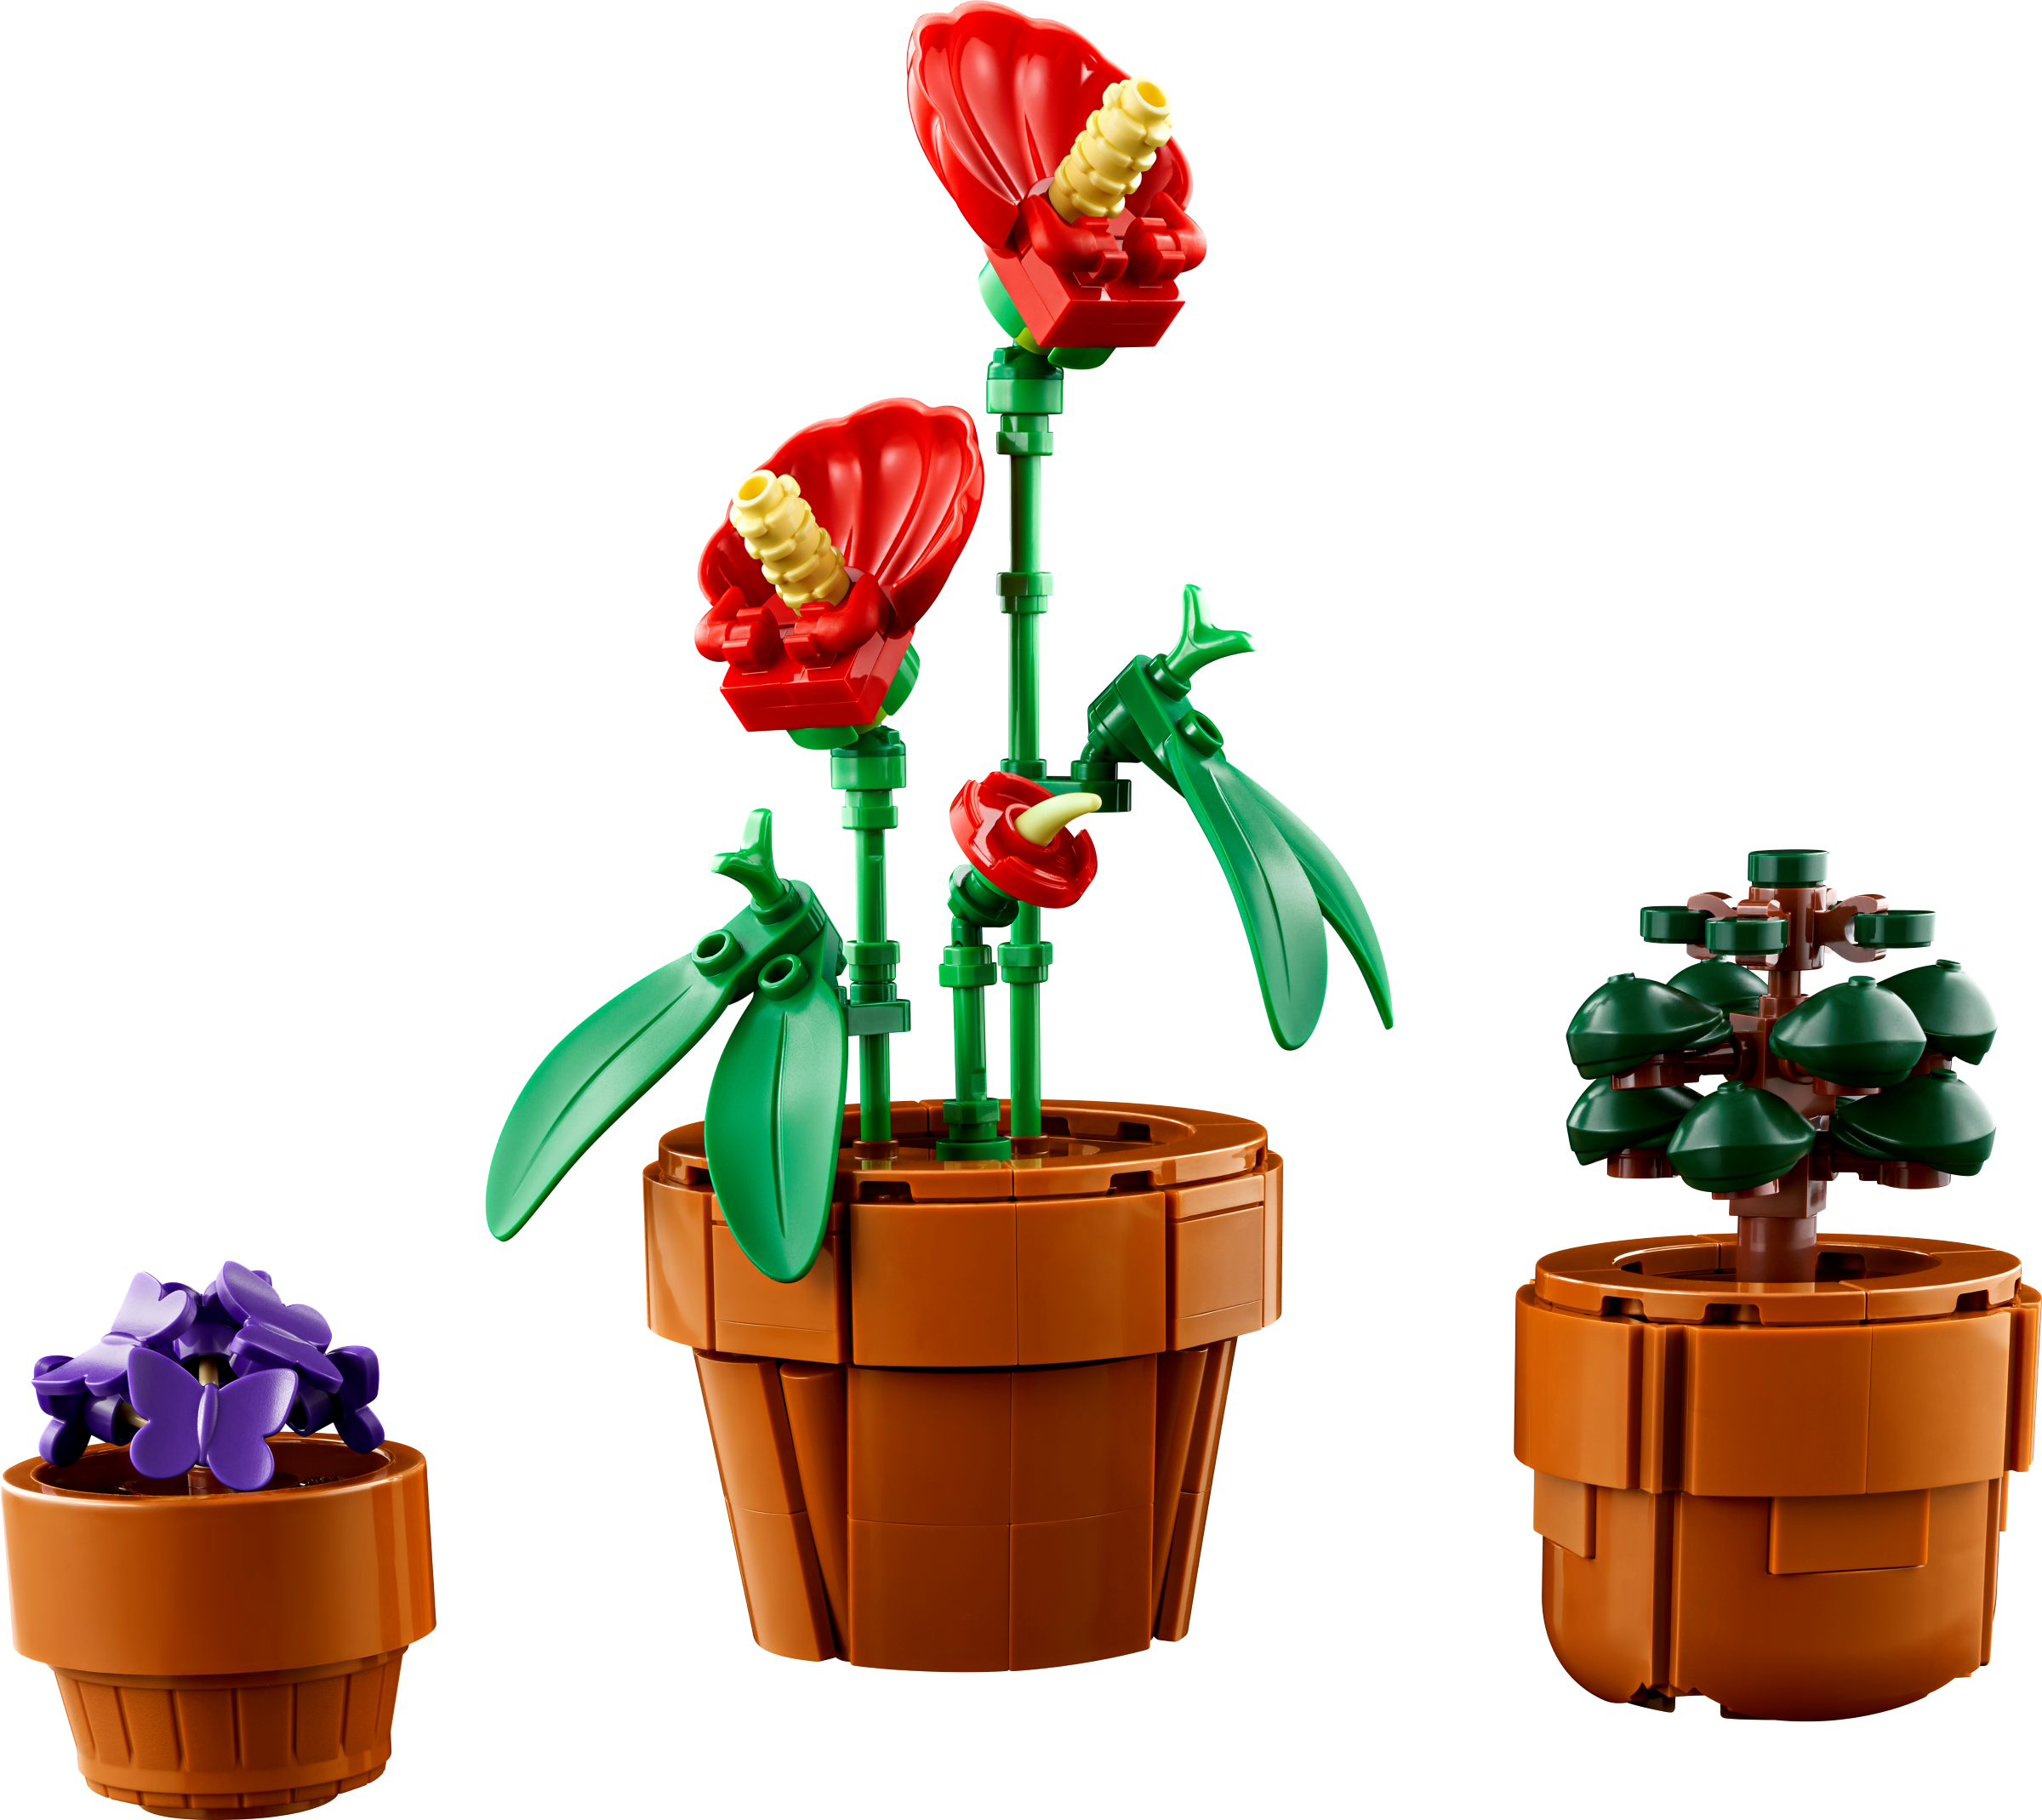 Lego ® Lot Pack 10 Plante Fleurs Végétation Plantes Flowers NEW